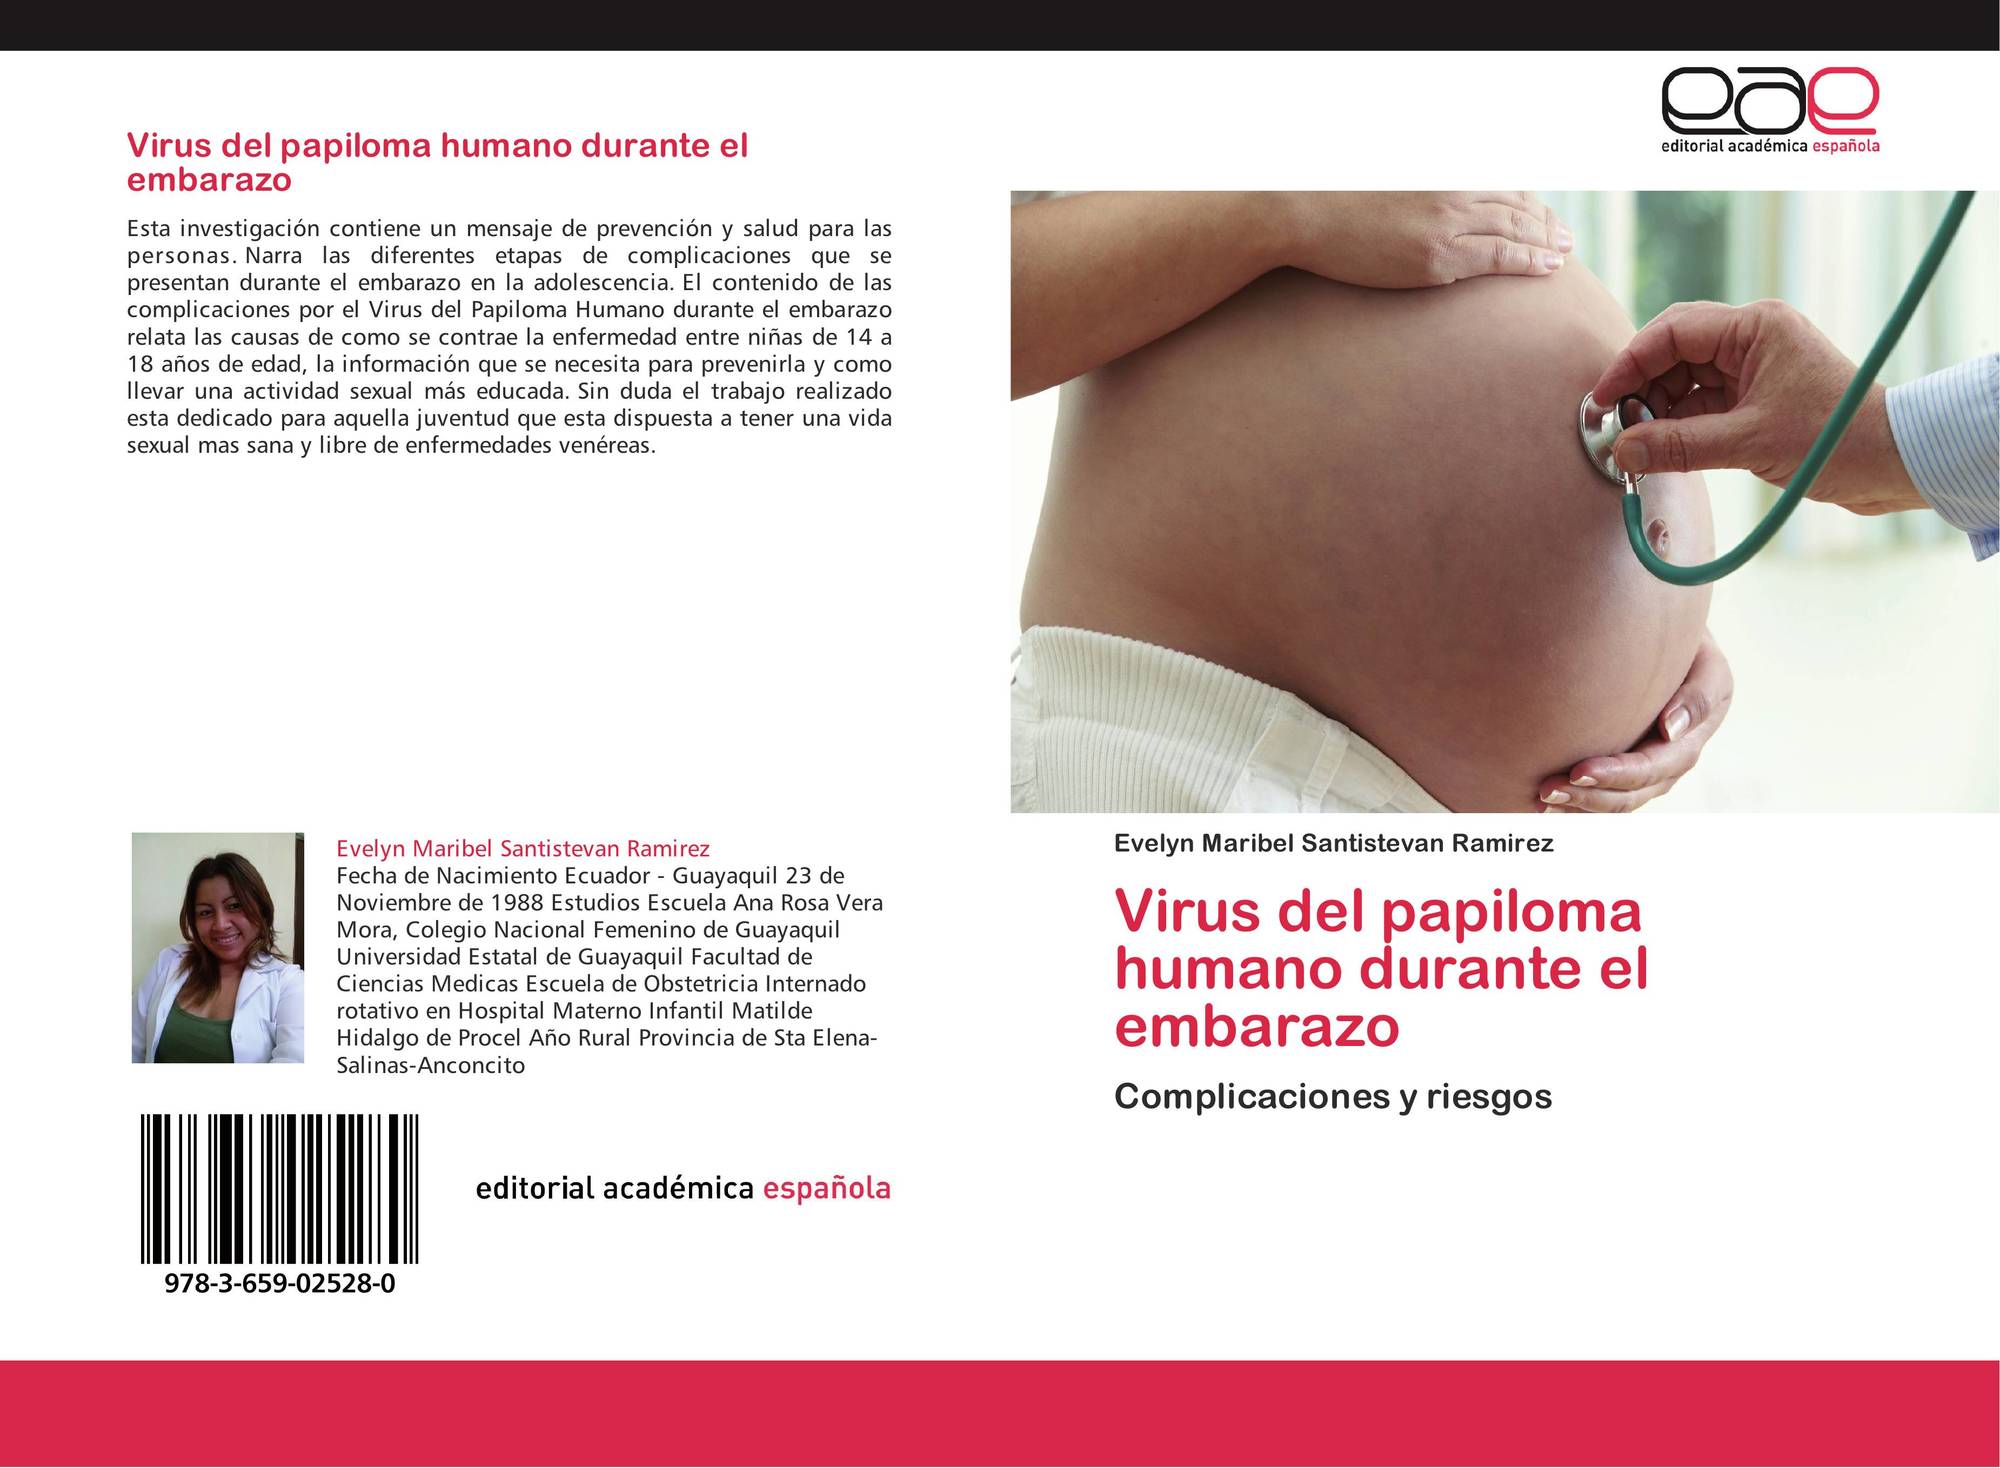 el virus del papiloma y el embarazo